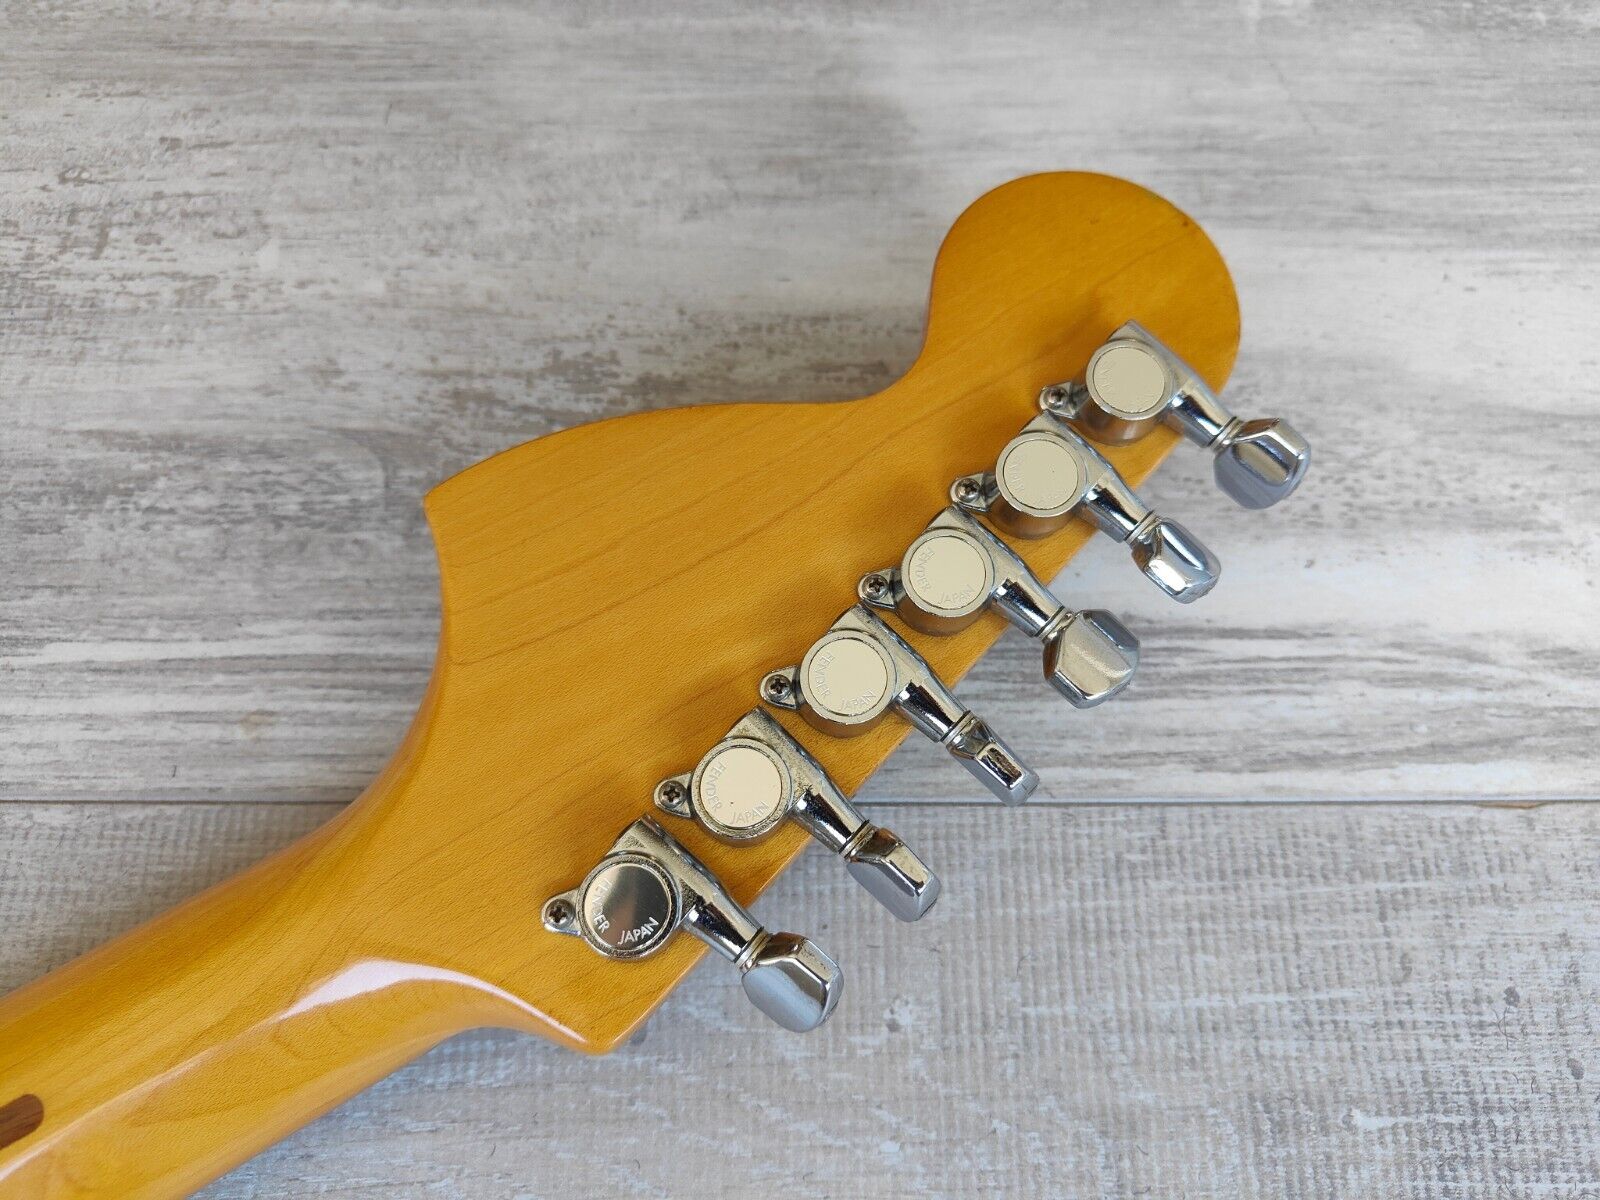 1985 Fender Japan ST72-65 Blackmore Scalloped Stratocaster (Aged Olympic White)